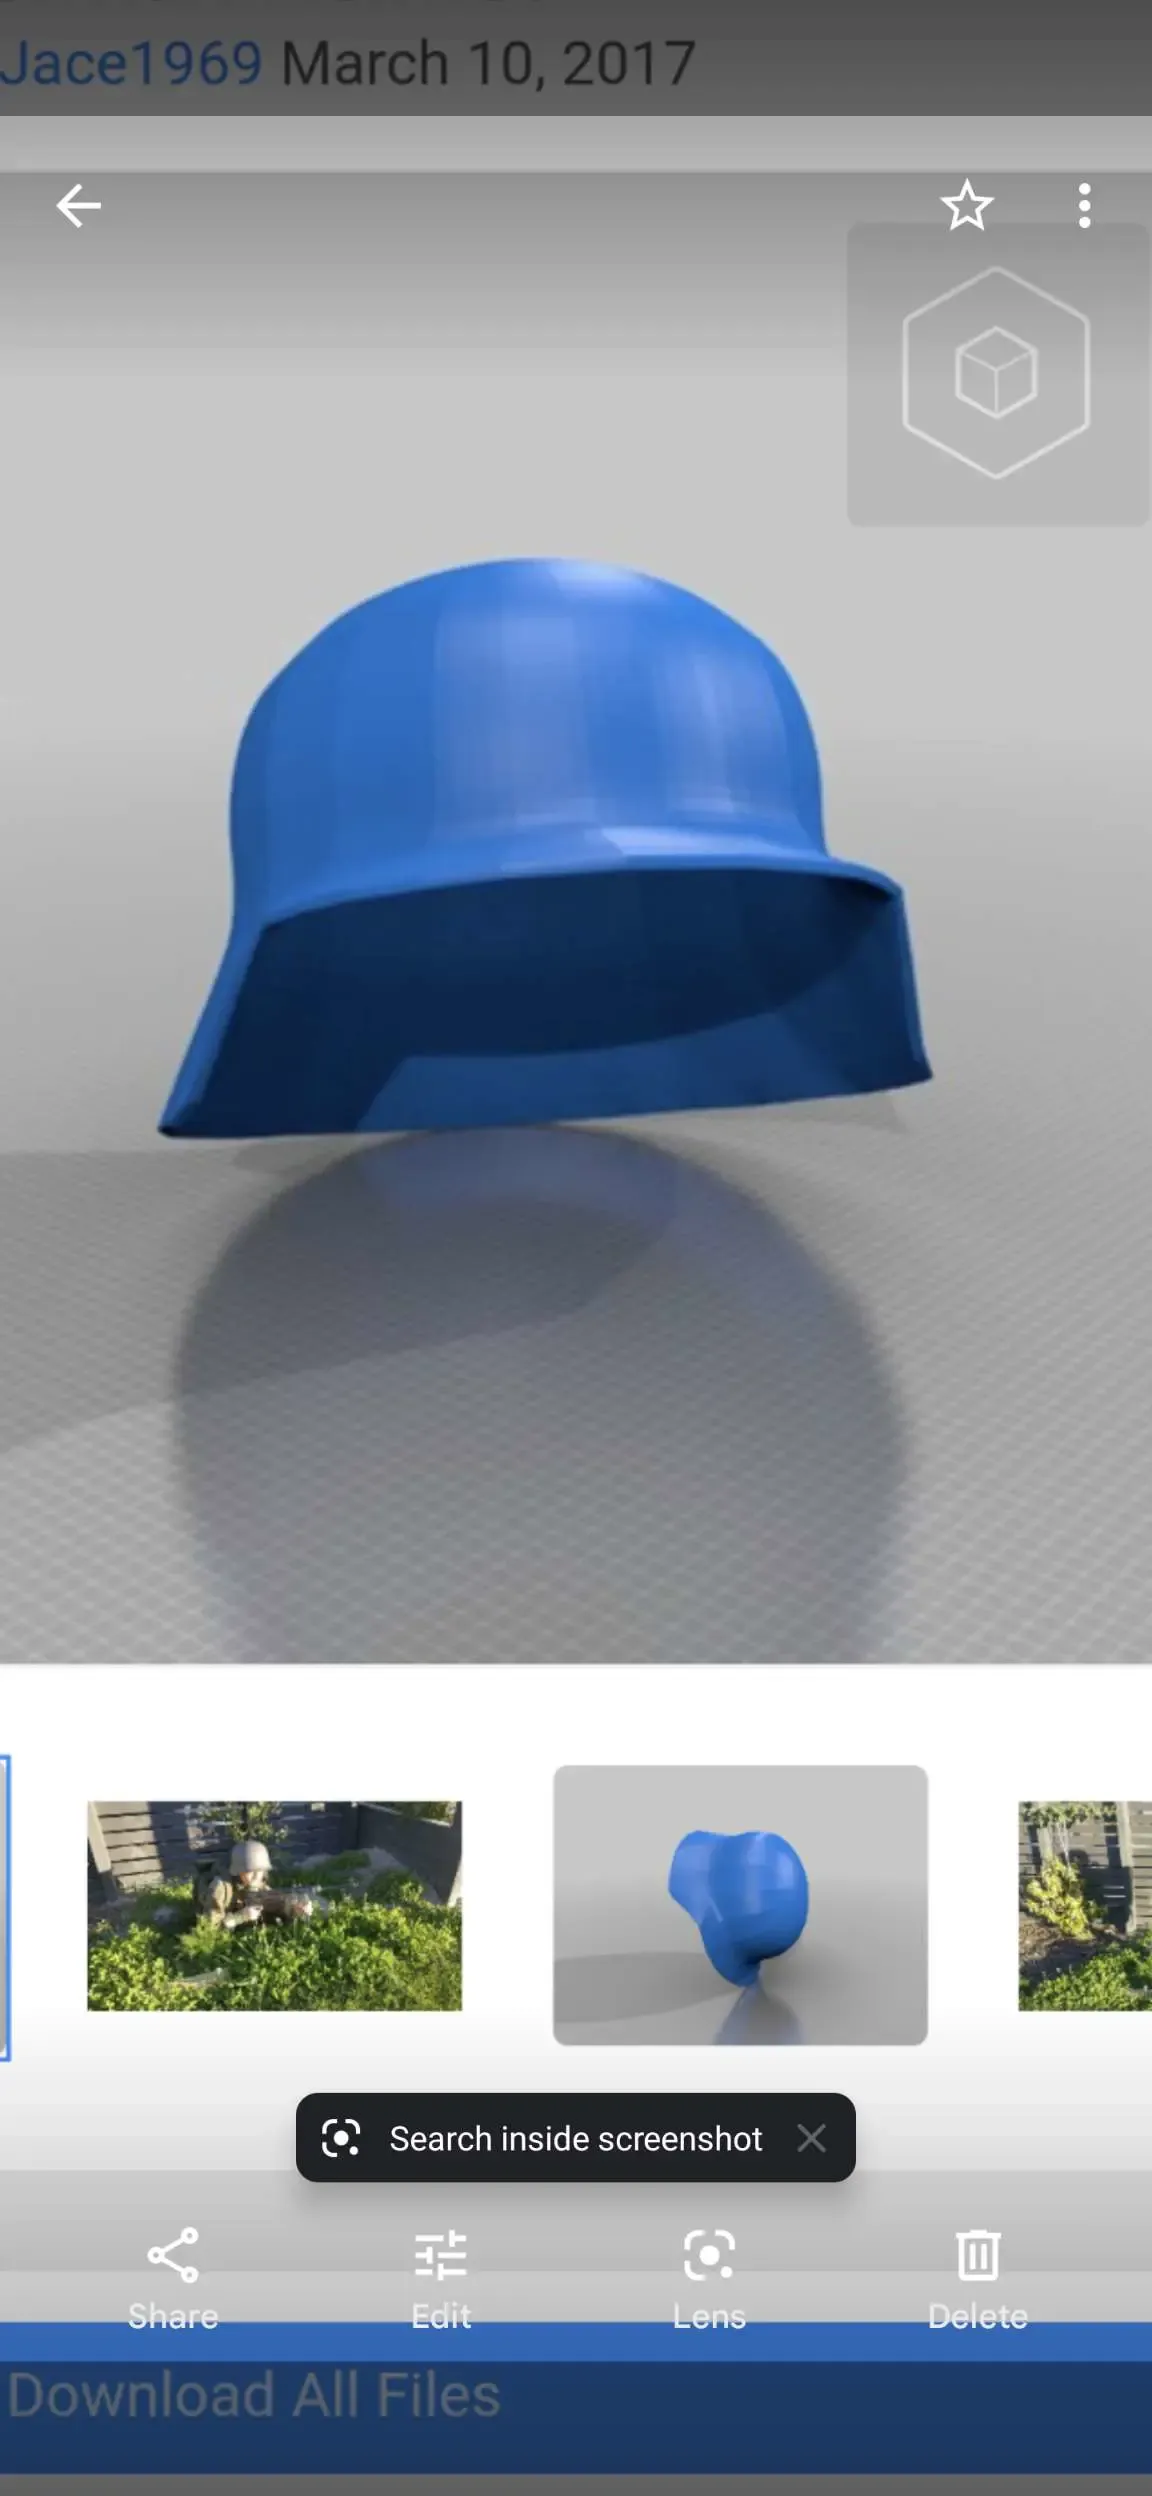 ww2 German helmet